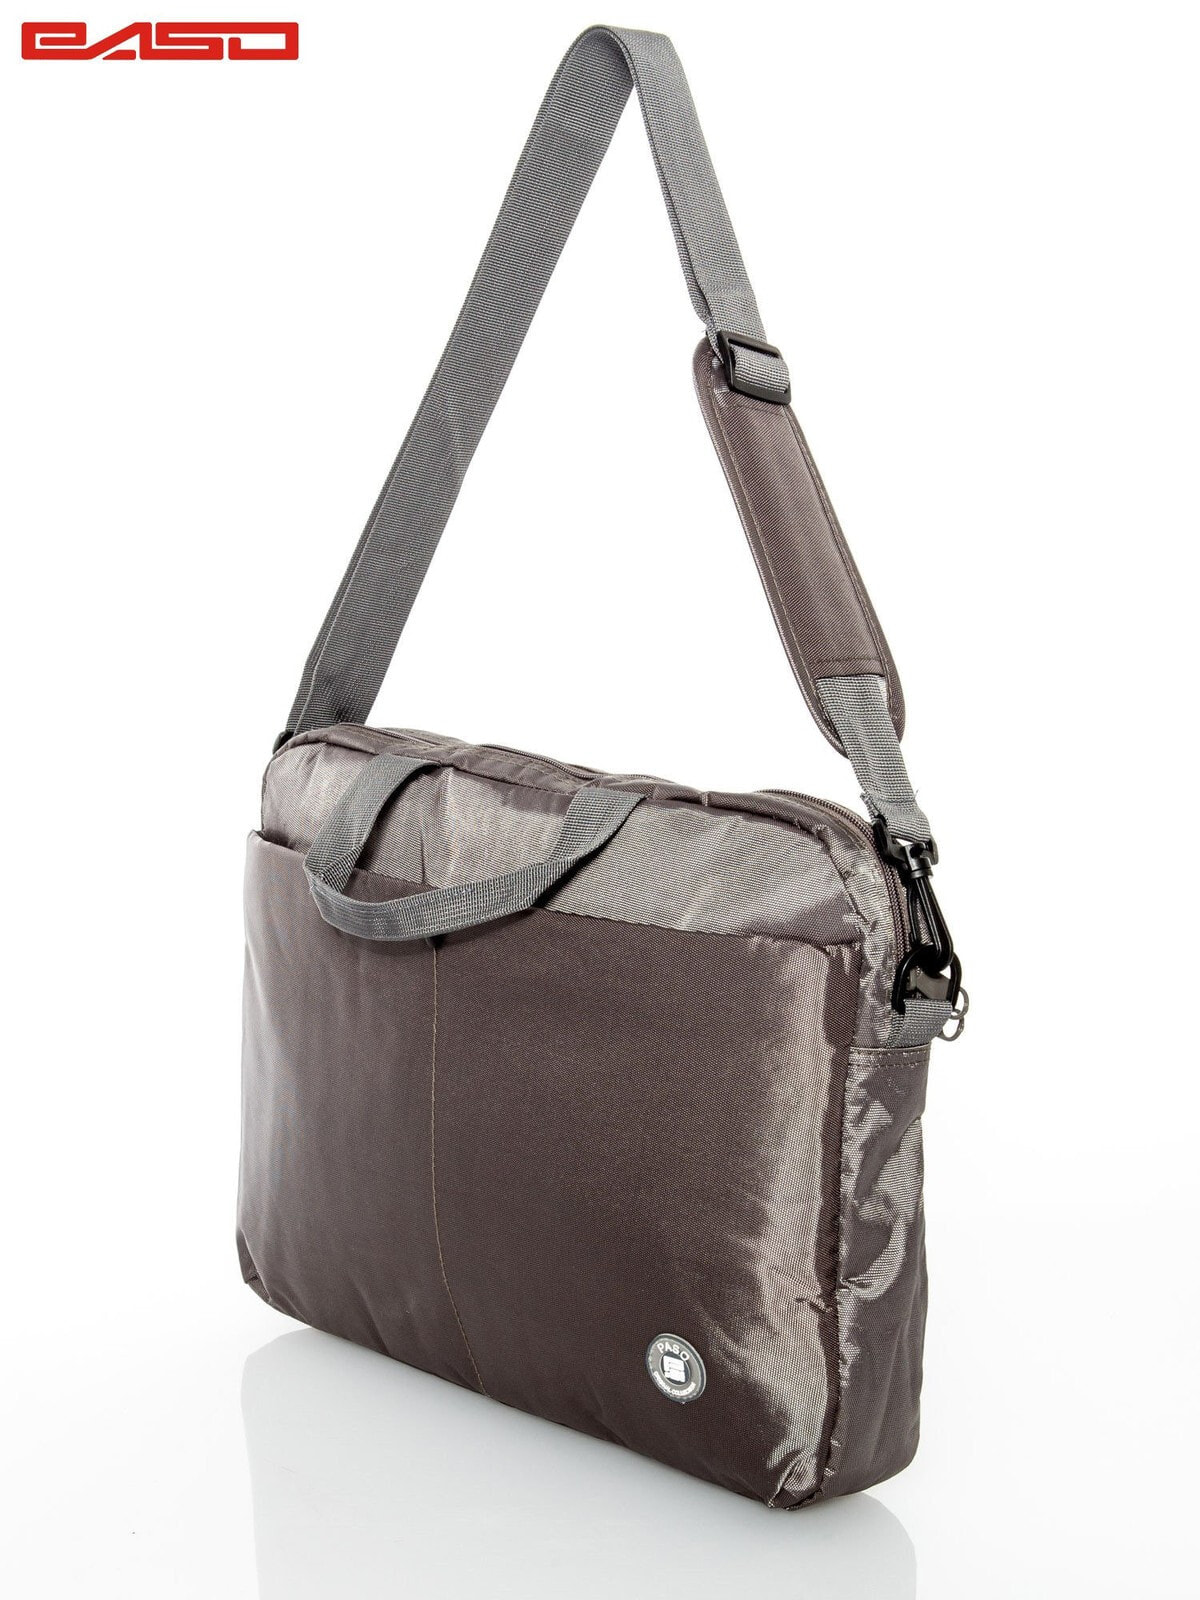 Женская сумка Factory Price для ноутбука,  большое отделение с двумя отделениями, внешний карман, рукоятки, регулируемый ремень, соединительный ремень.